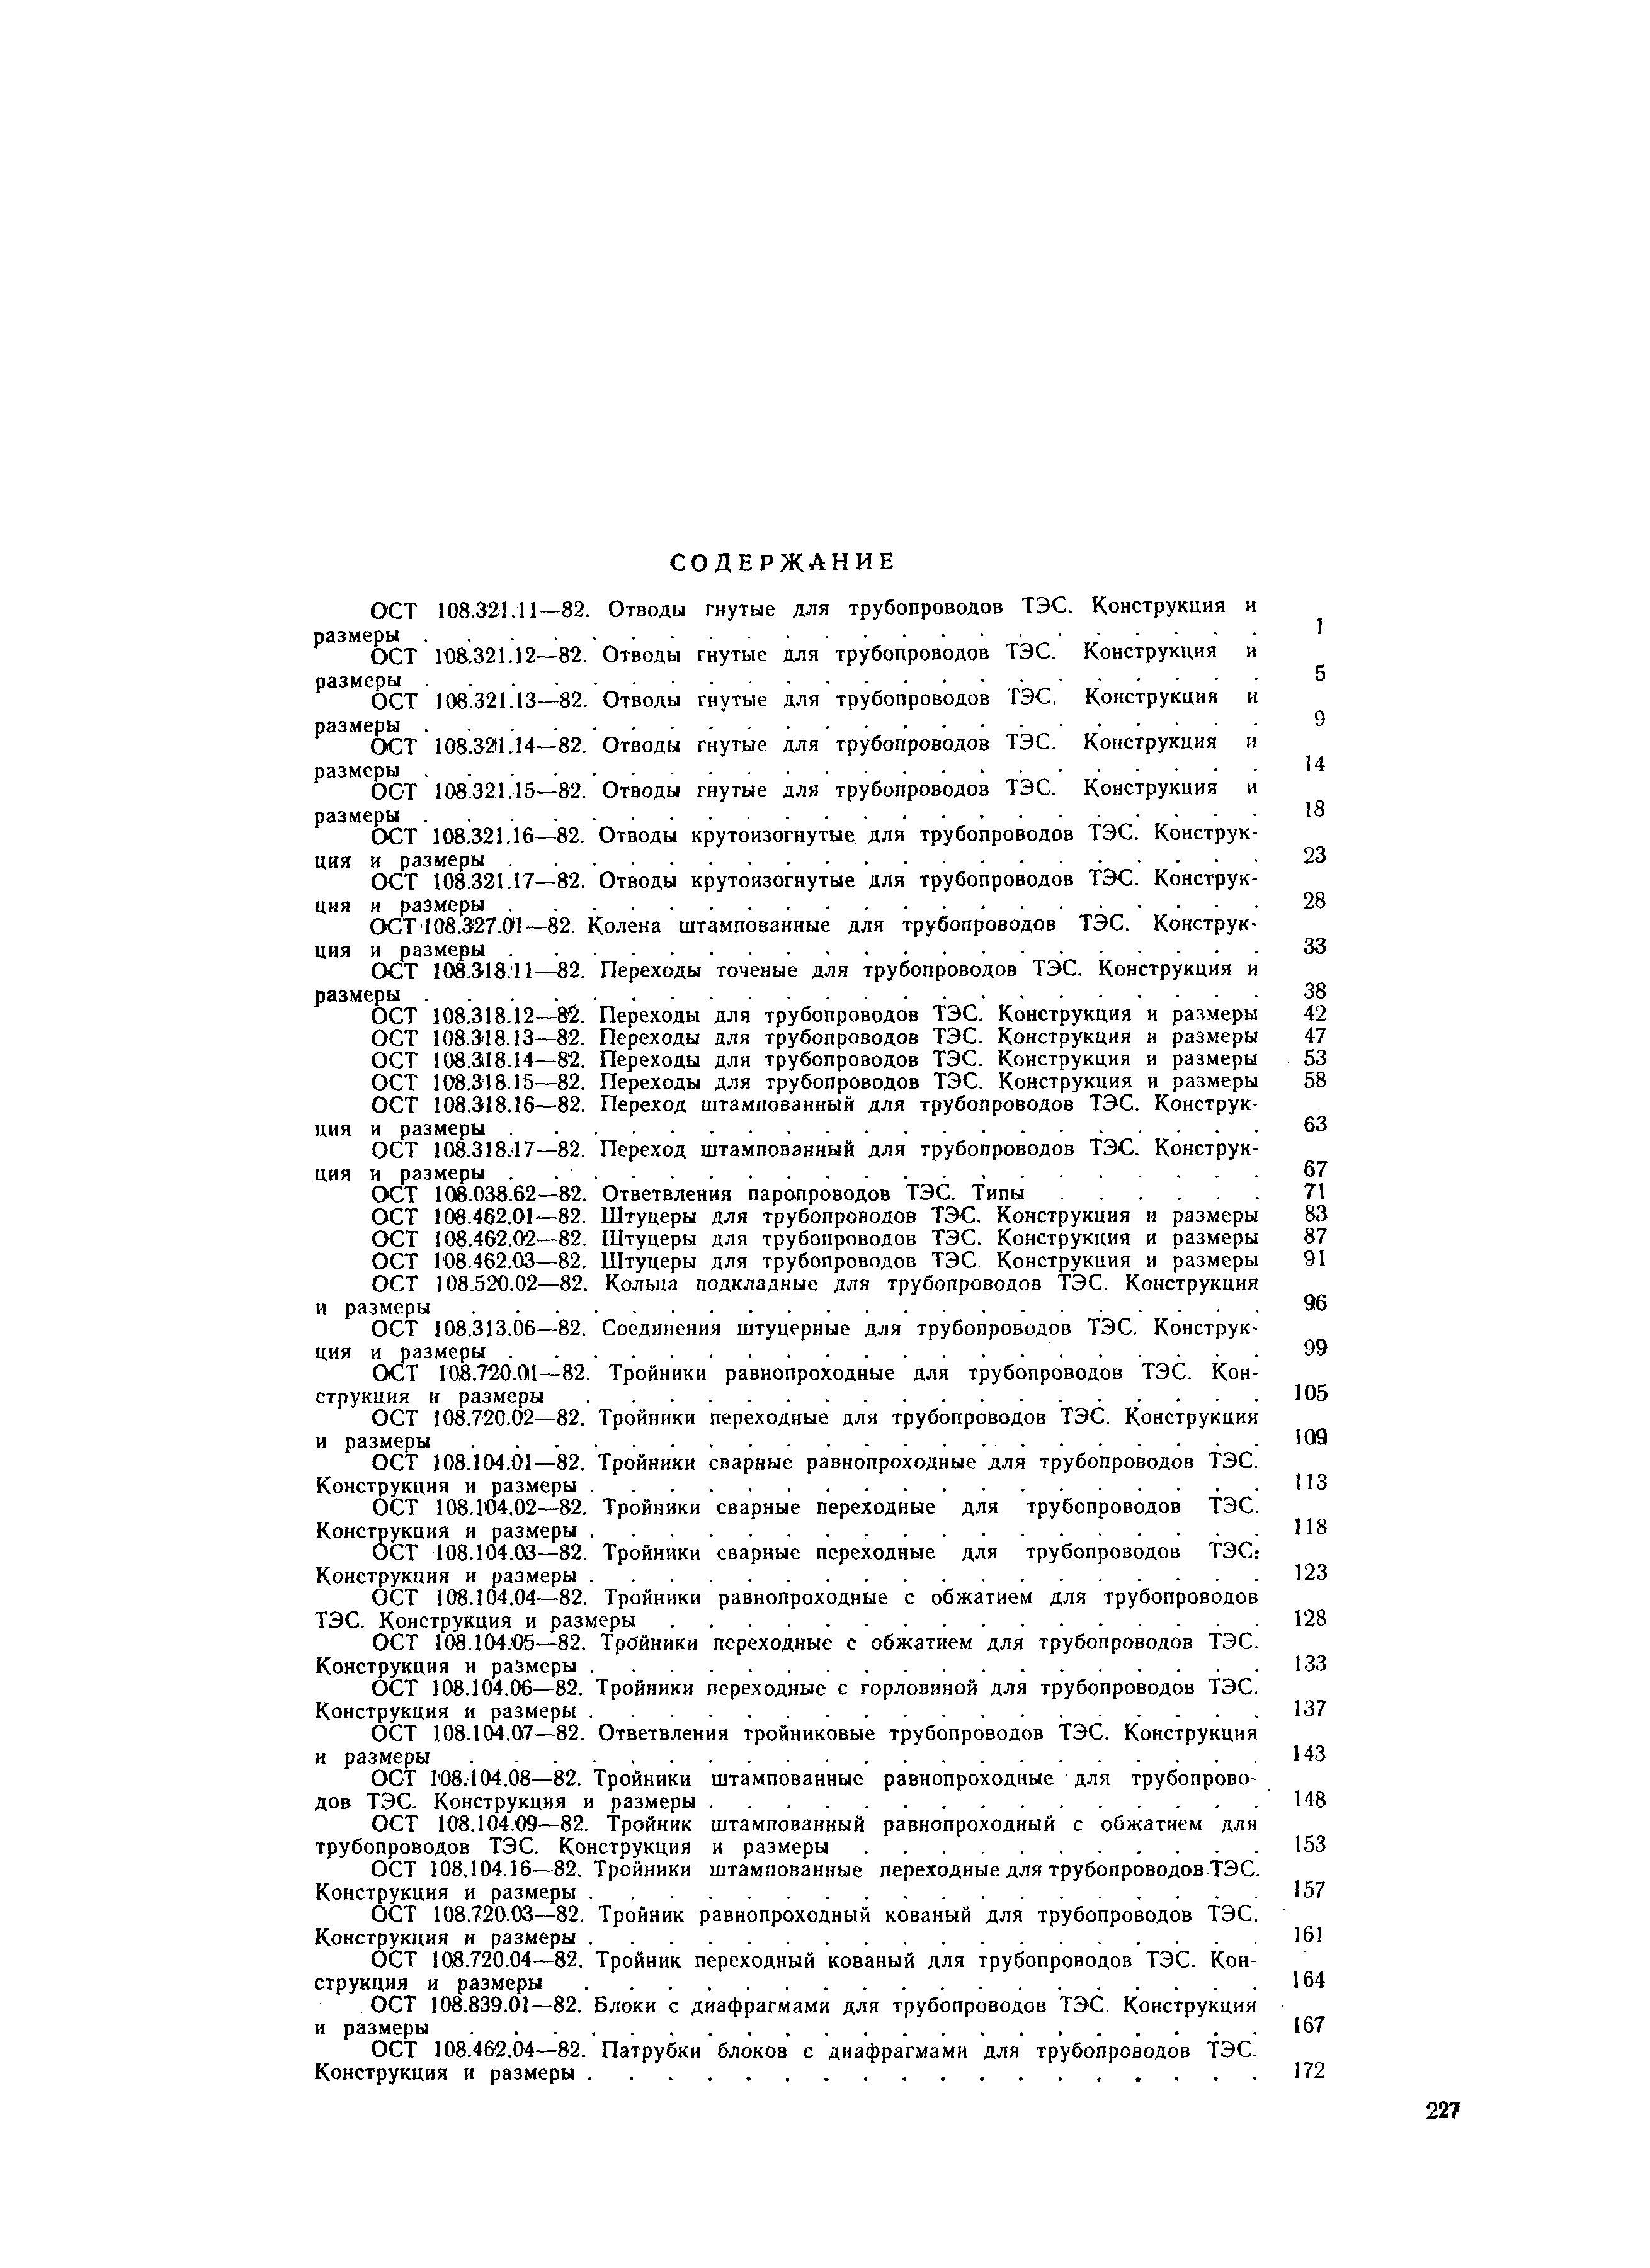 ОСТ 108.720.02-82